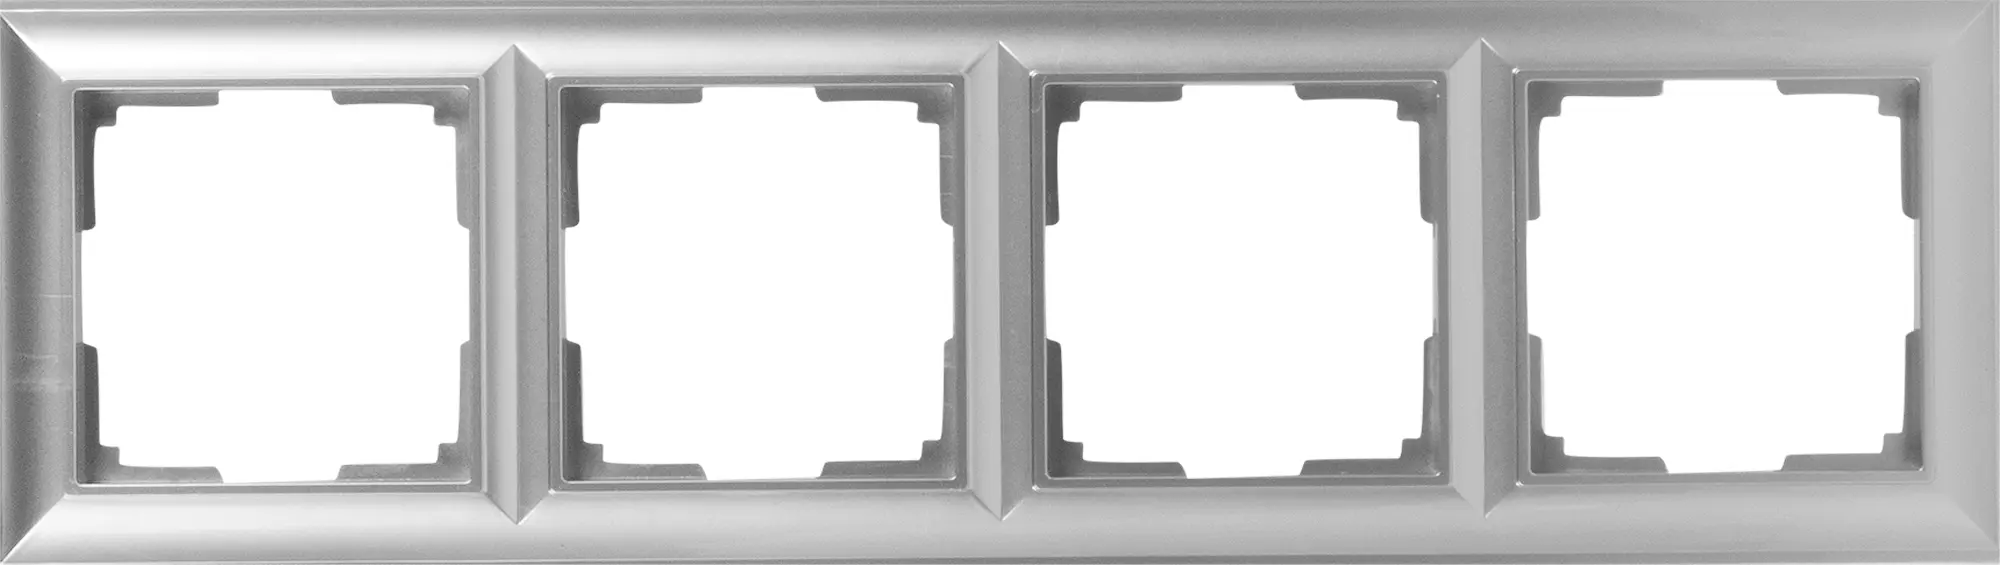 Рамка для розеток и выключателей Werkel Fiore 4 поста, цвет серебряный